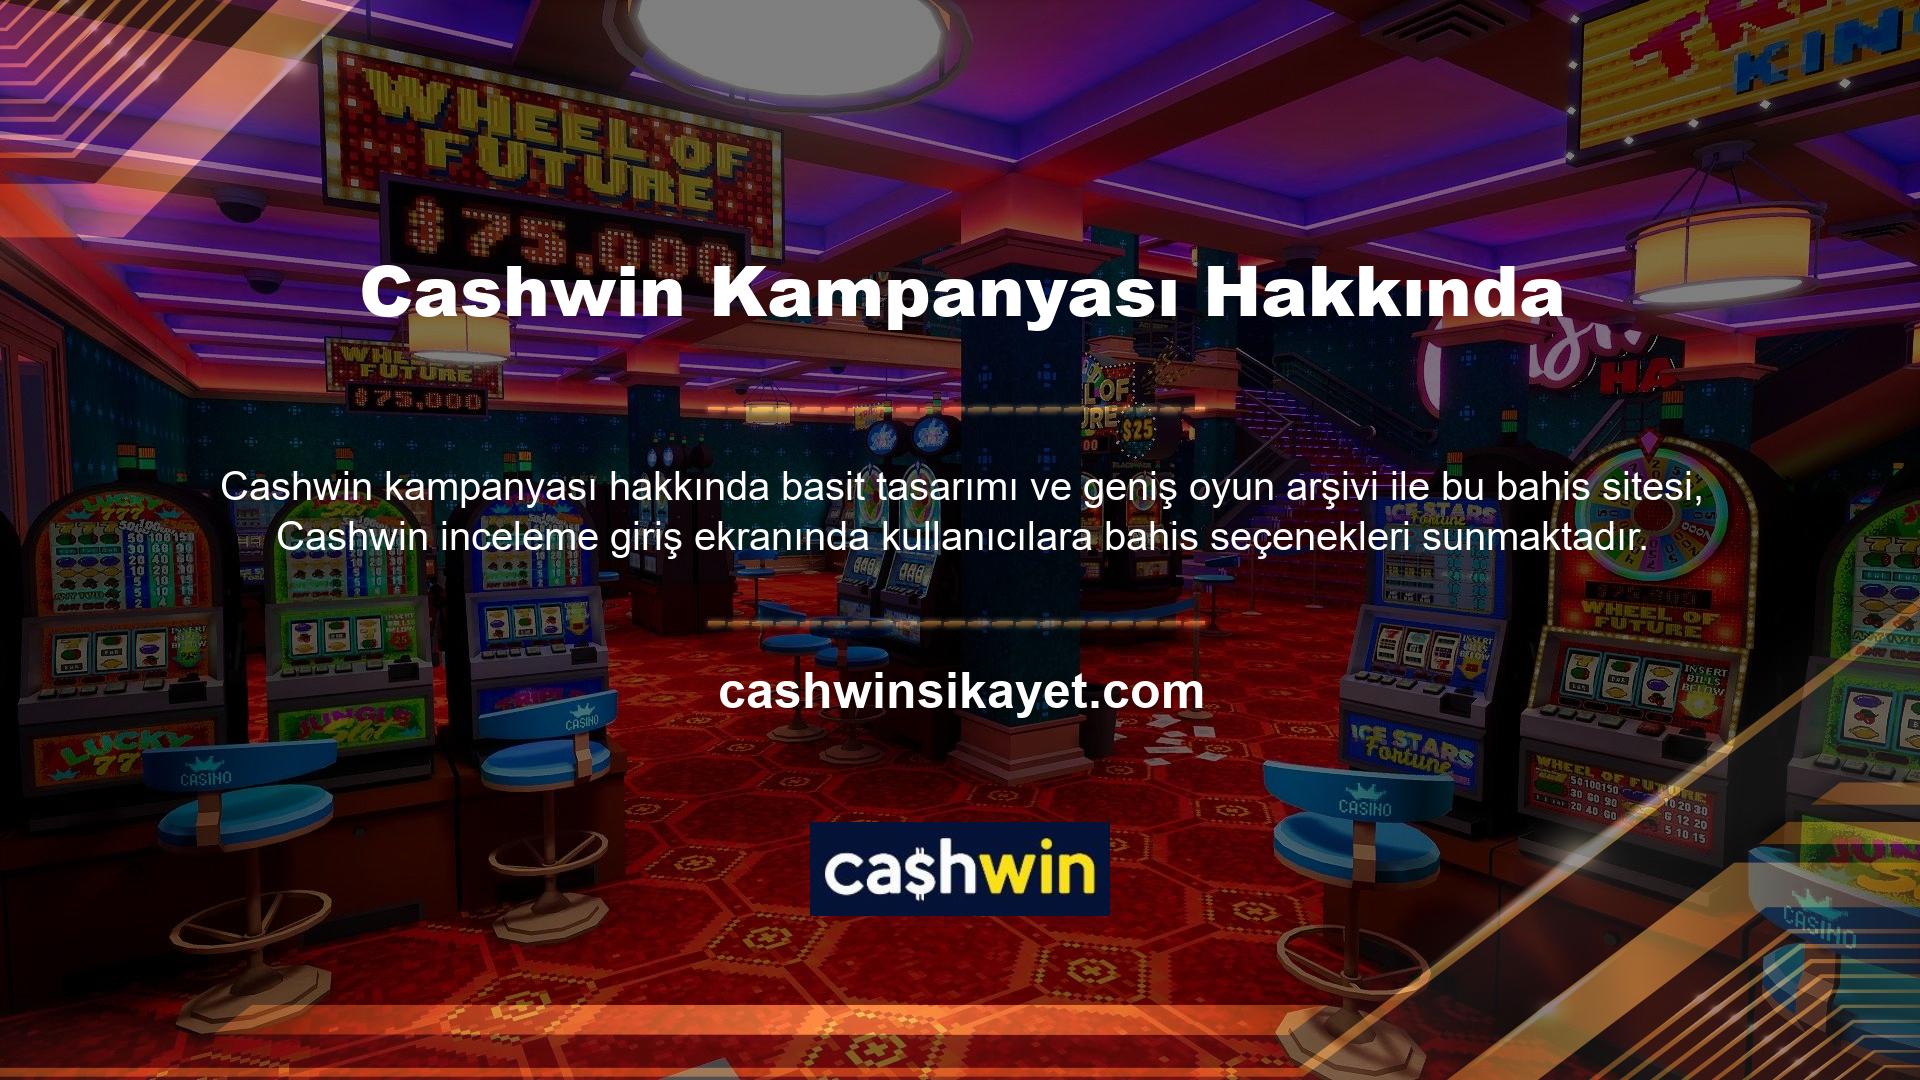 Bahis seçeneklerimiz Cashwin üzerinden canlı ve sanal bahis kampanyaları oynamanıza olanak sağlar